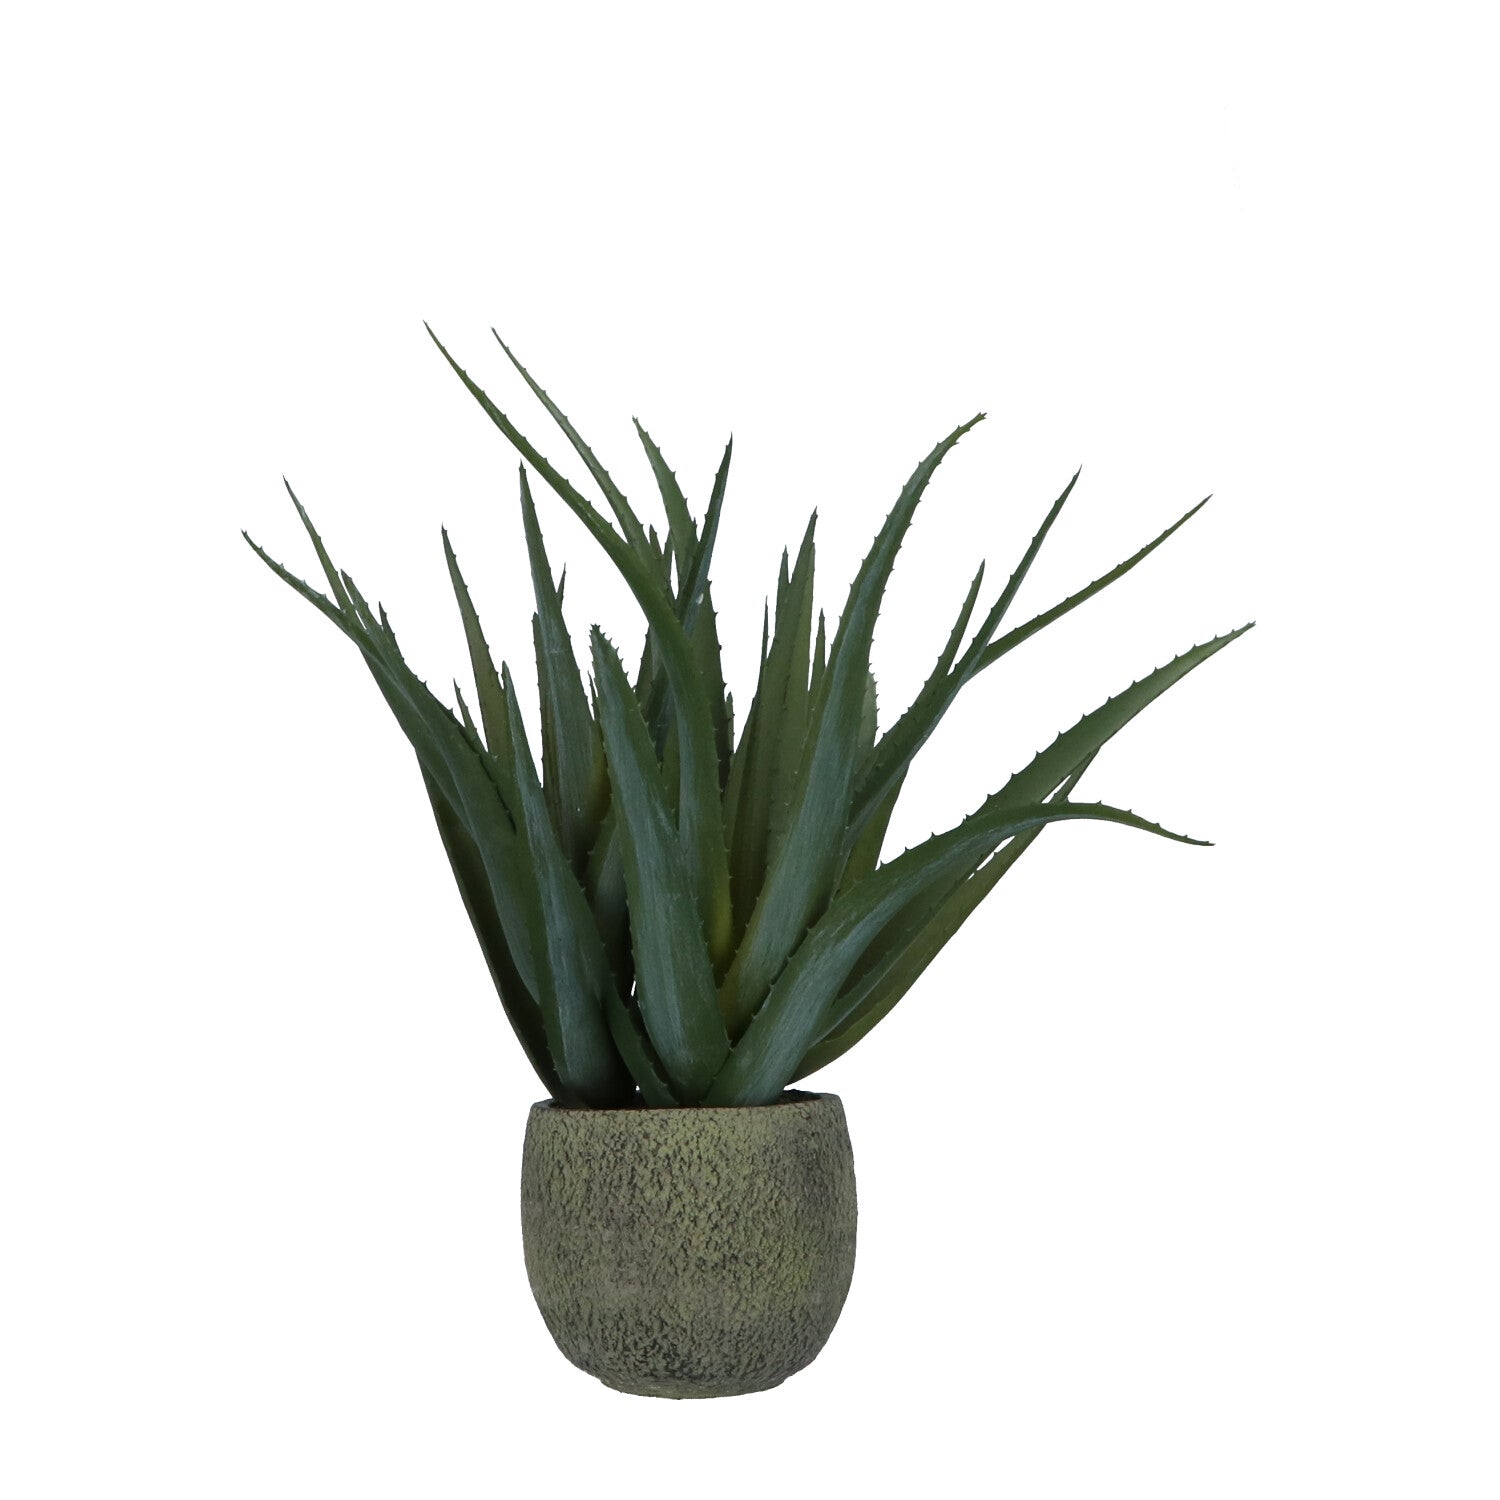 Kopu® Kunstplant Aloe Vera 48 cm in binnenpot met aarde - 30 bladeren